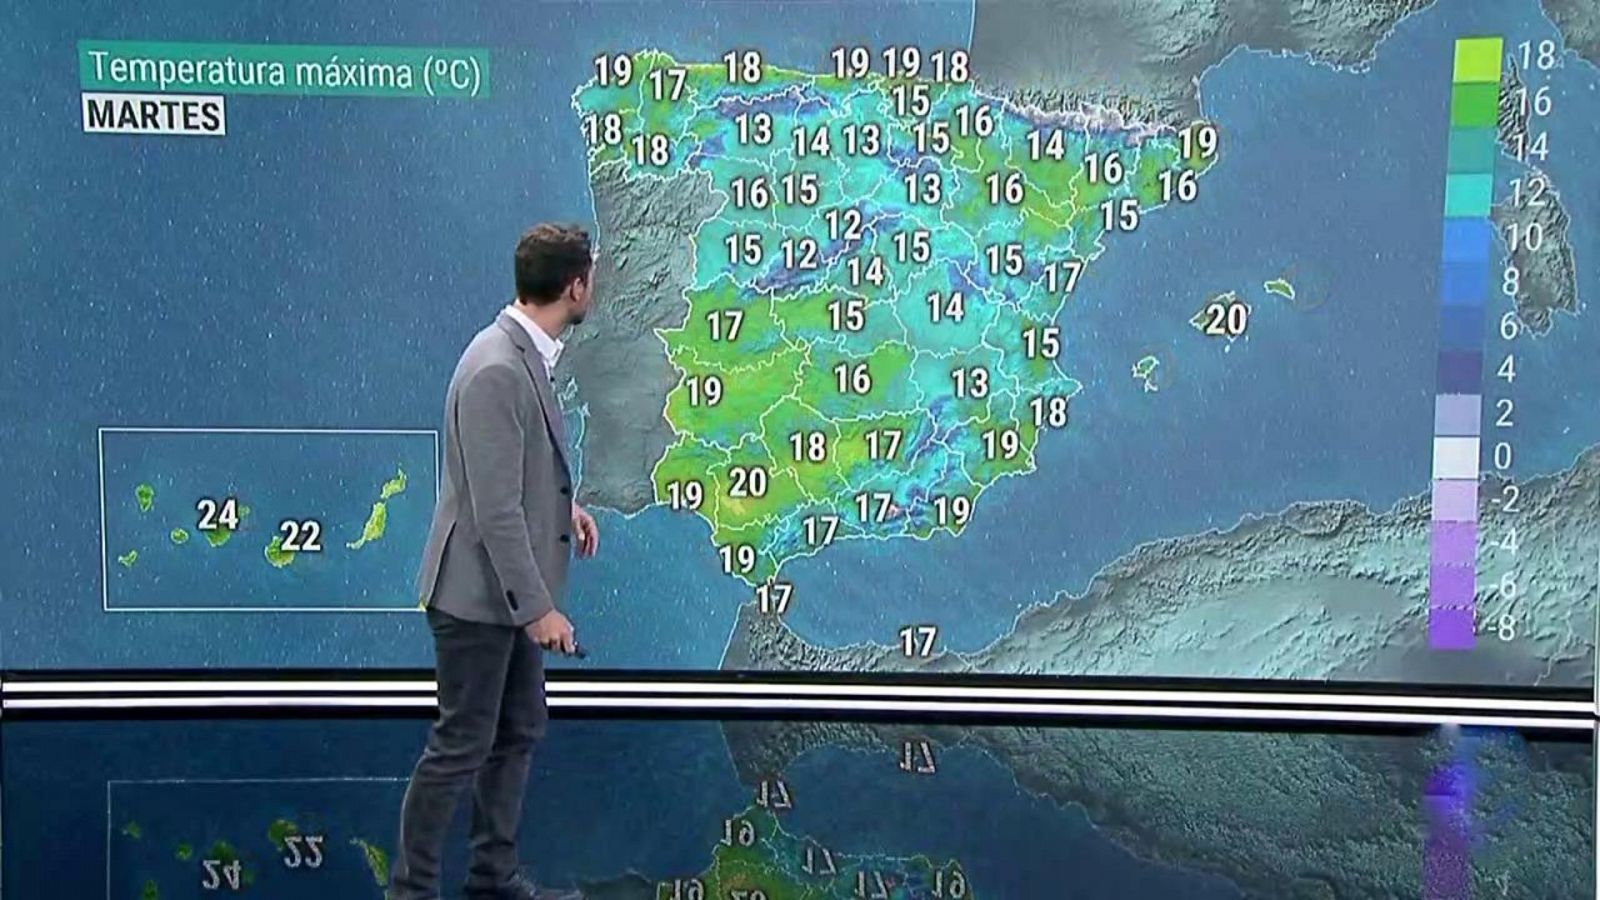 Suben las temperaturas diurnas, salvo en el Mediterráneo y Canarias